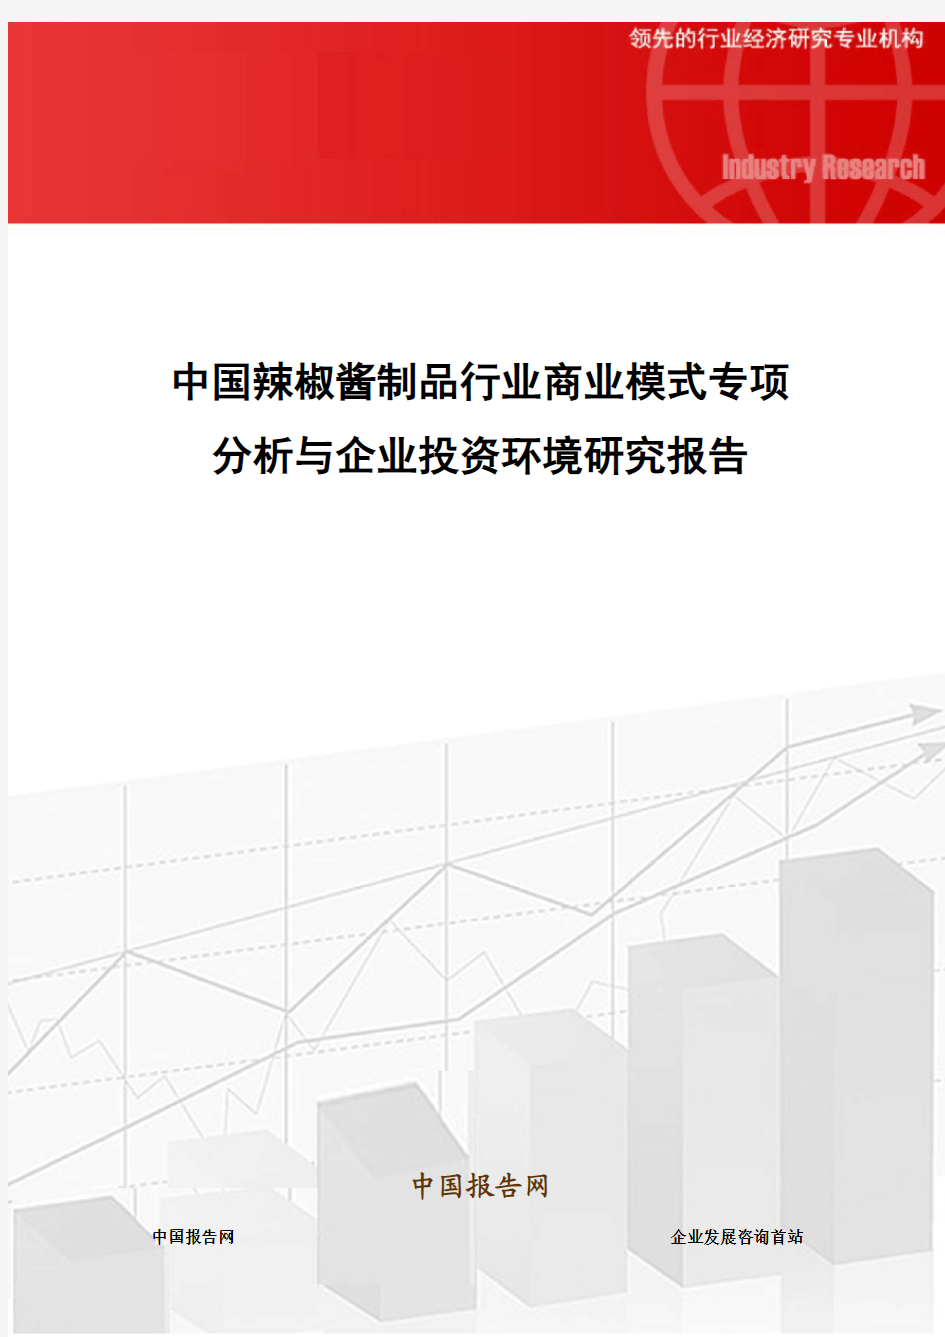 中国辣椒酱制品行业商业模式专项分析与企业投资环境研究报告